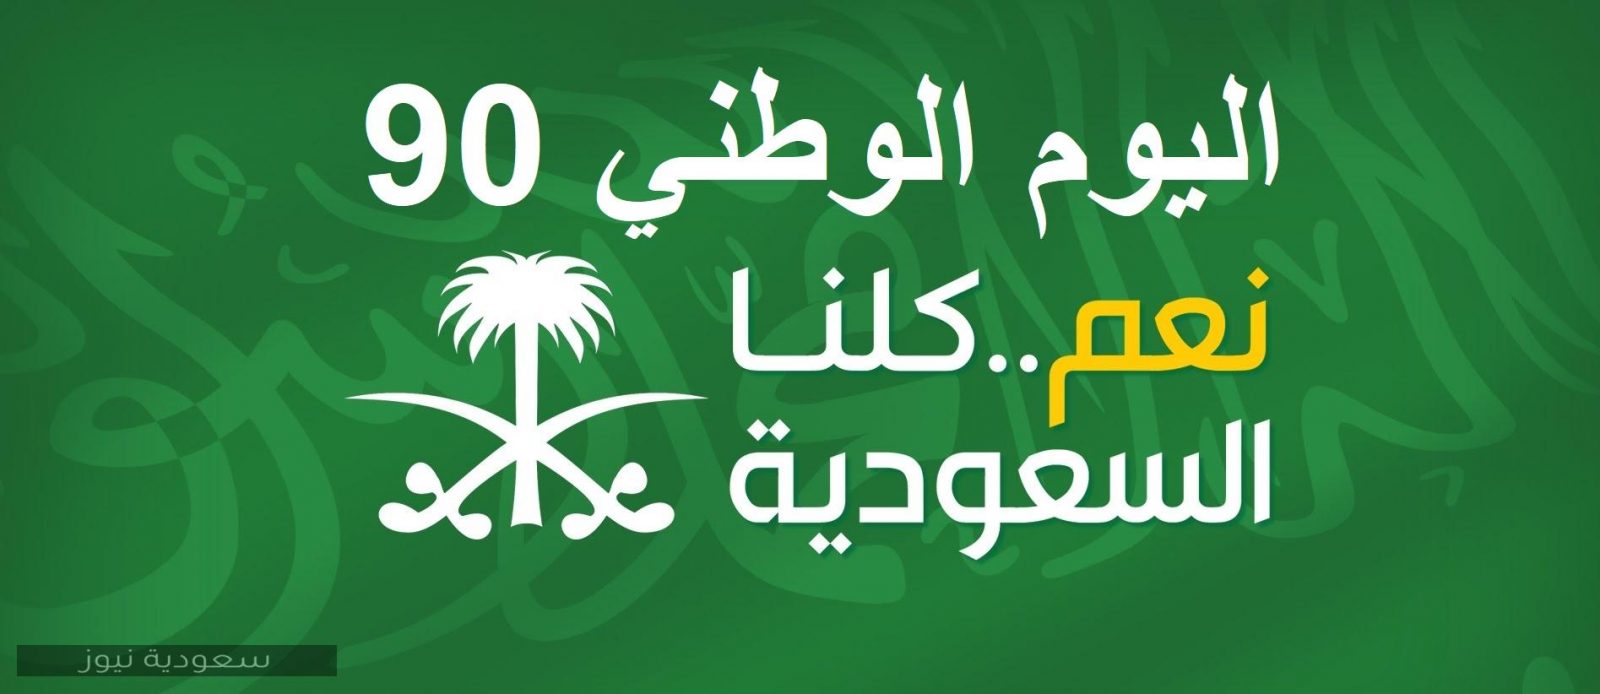 اليوم الوطني 90 السعودي احتفالات وأفكار جديدة 1442